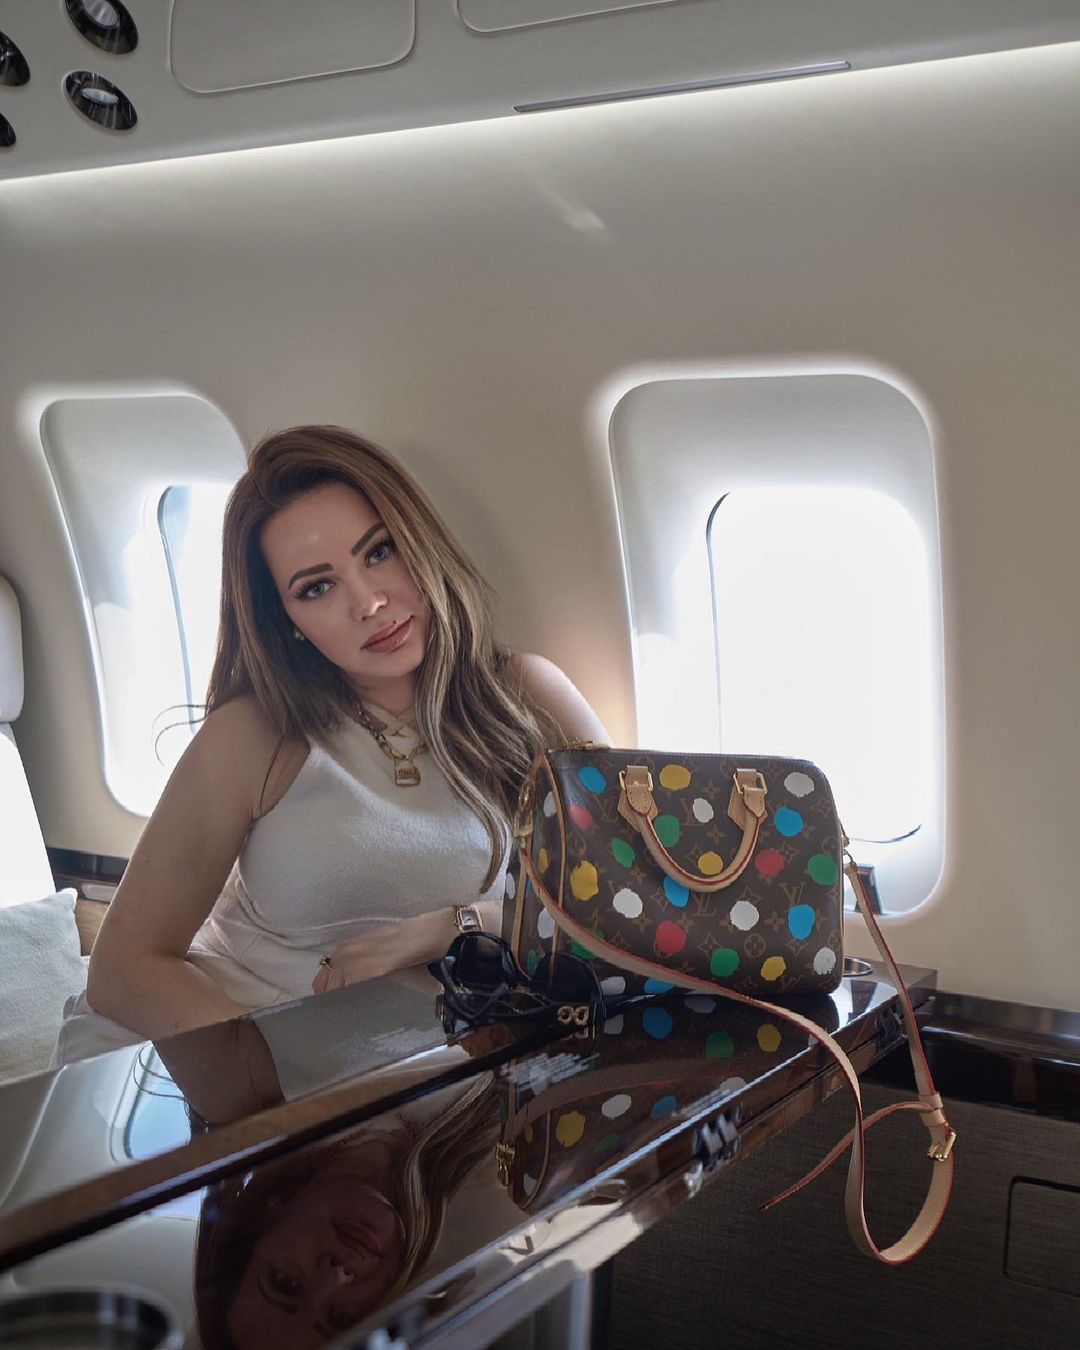 أسما إبراهيم تستعرض جمالها في طائرتها الخاصة 1